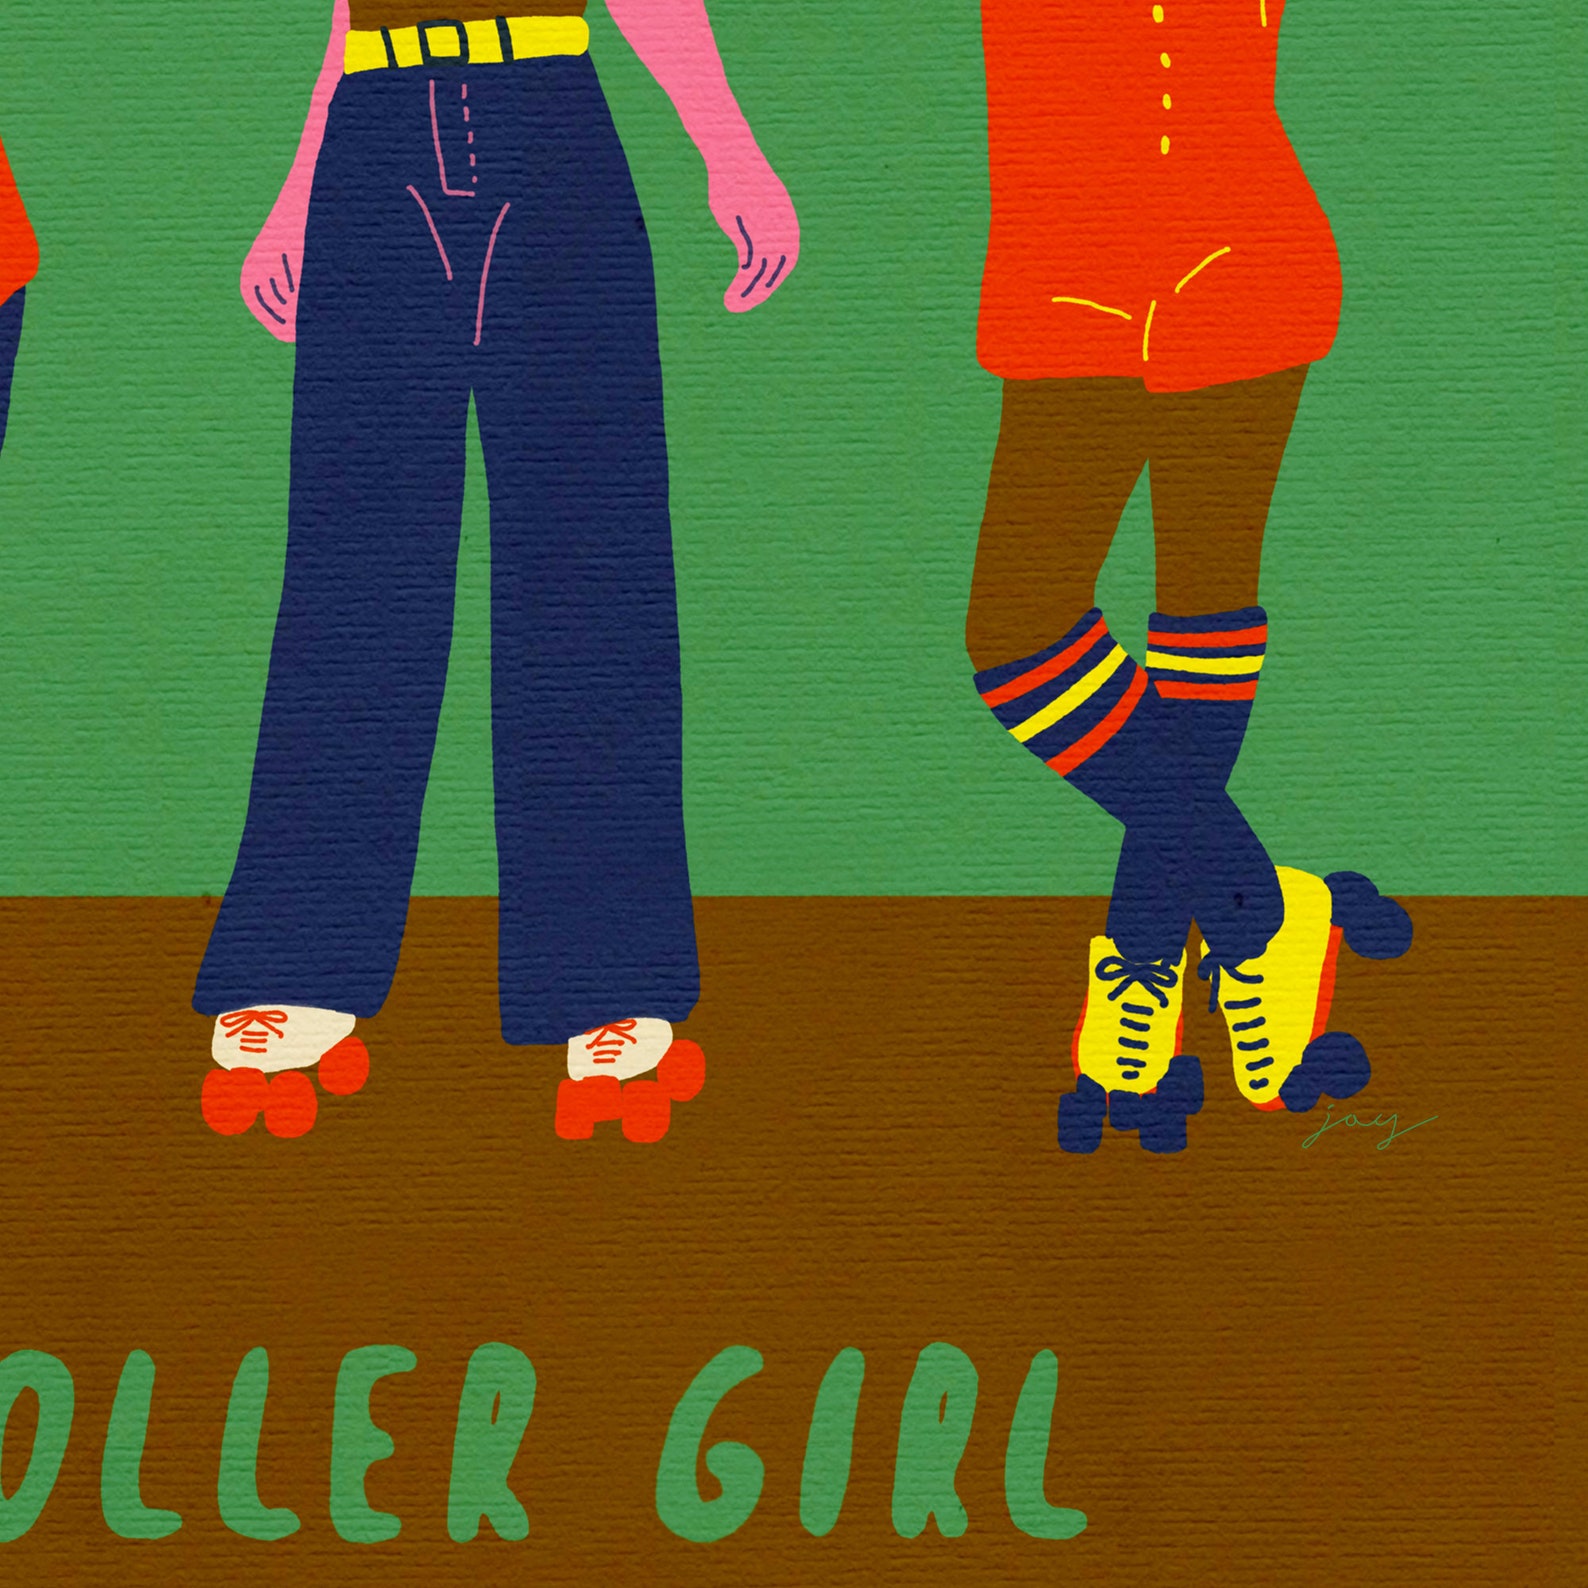 Roller girl poster vintage girl poster retro girl poster | Etsy